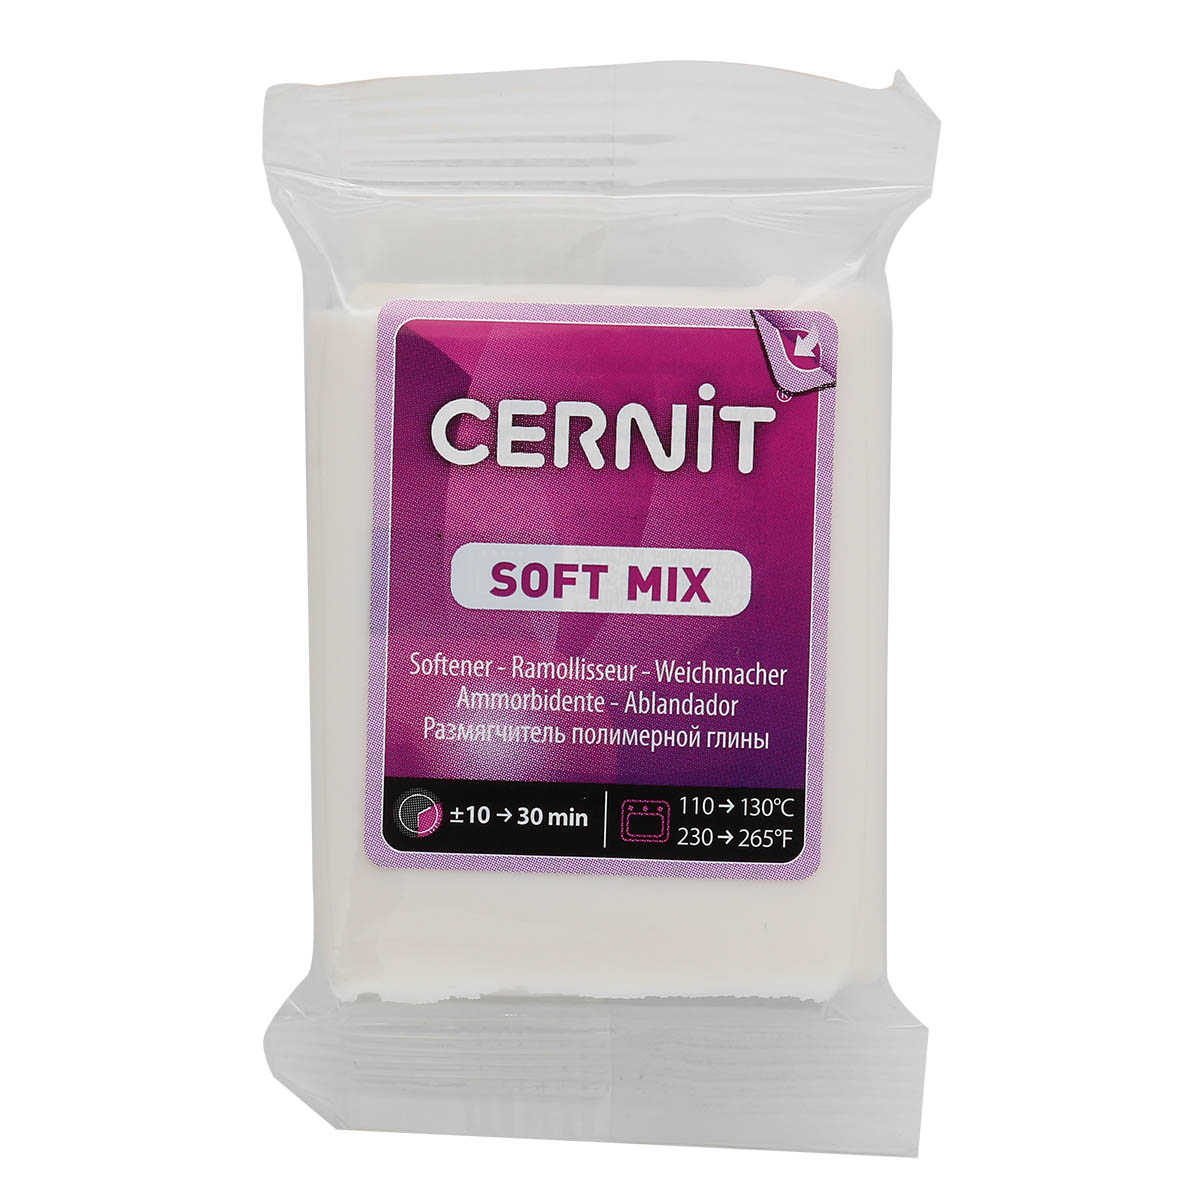 CE1050056005 Размягчитель для полимерной глины SOFT MIX 56 гр. Cernit